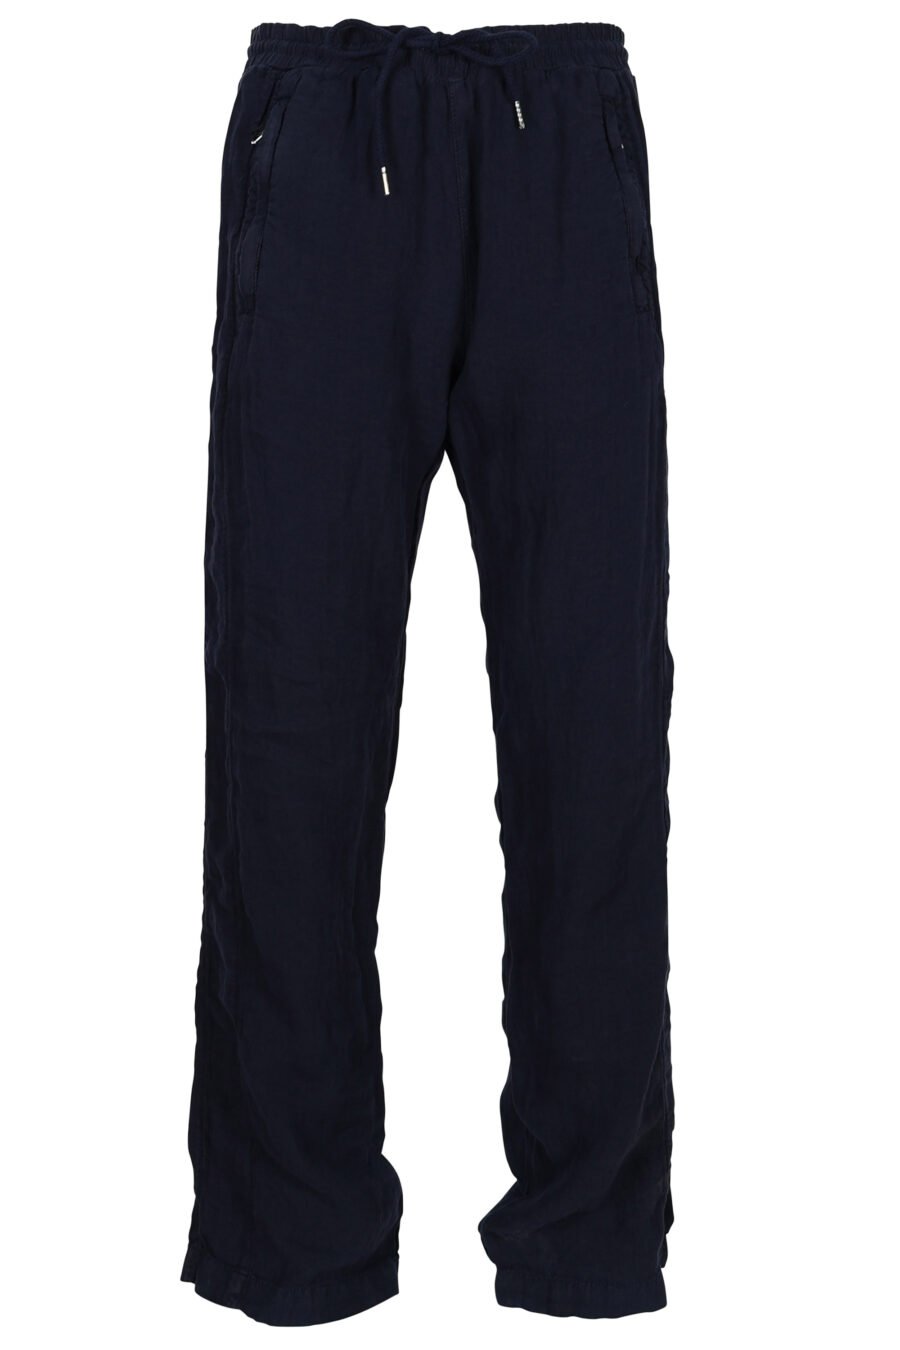 Pantalón de chándal azul oscuro con minilogo - 4062226851497